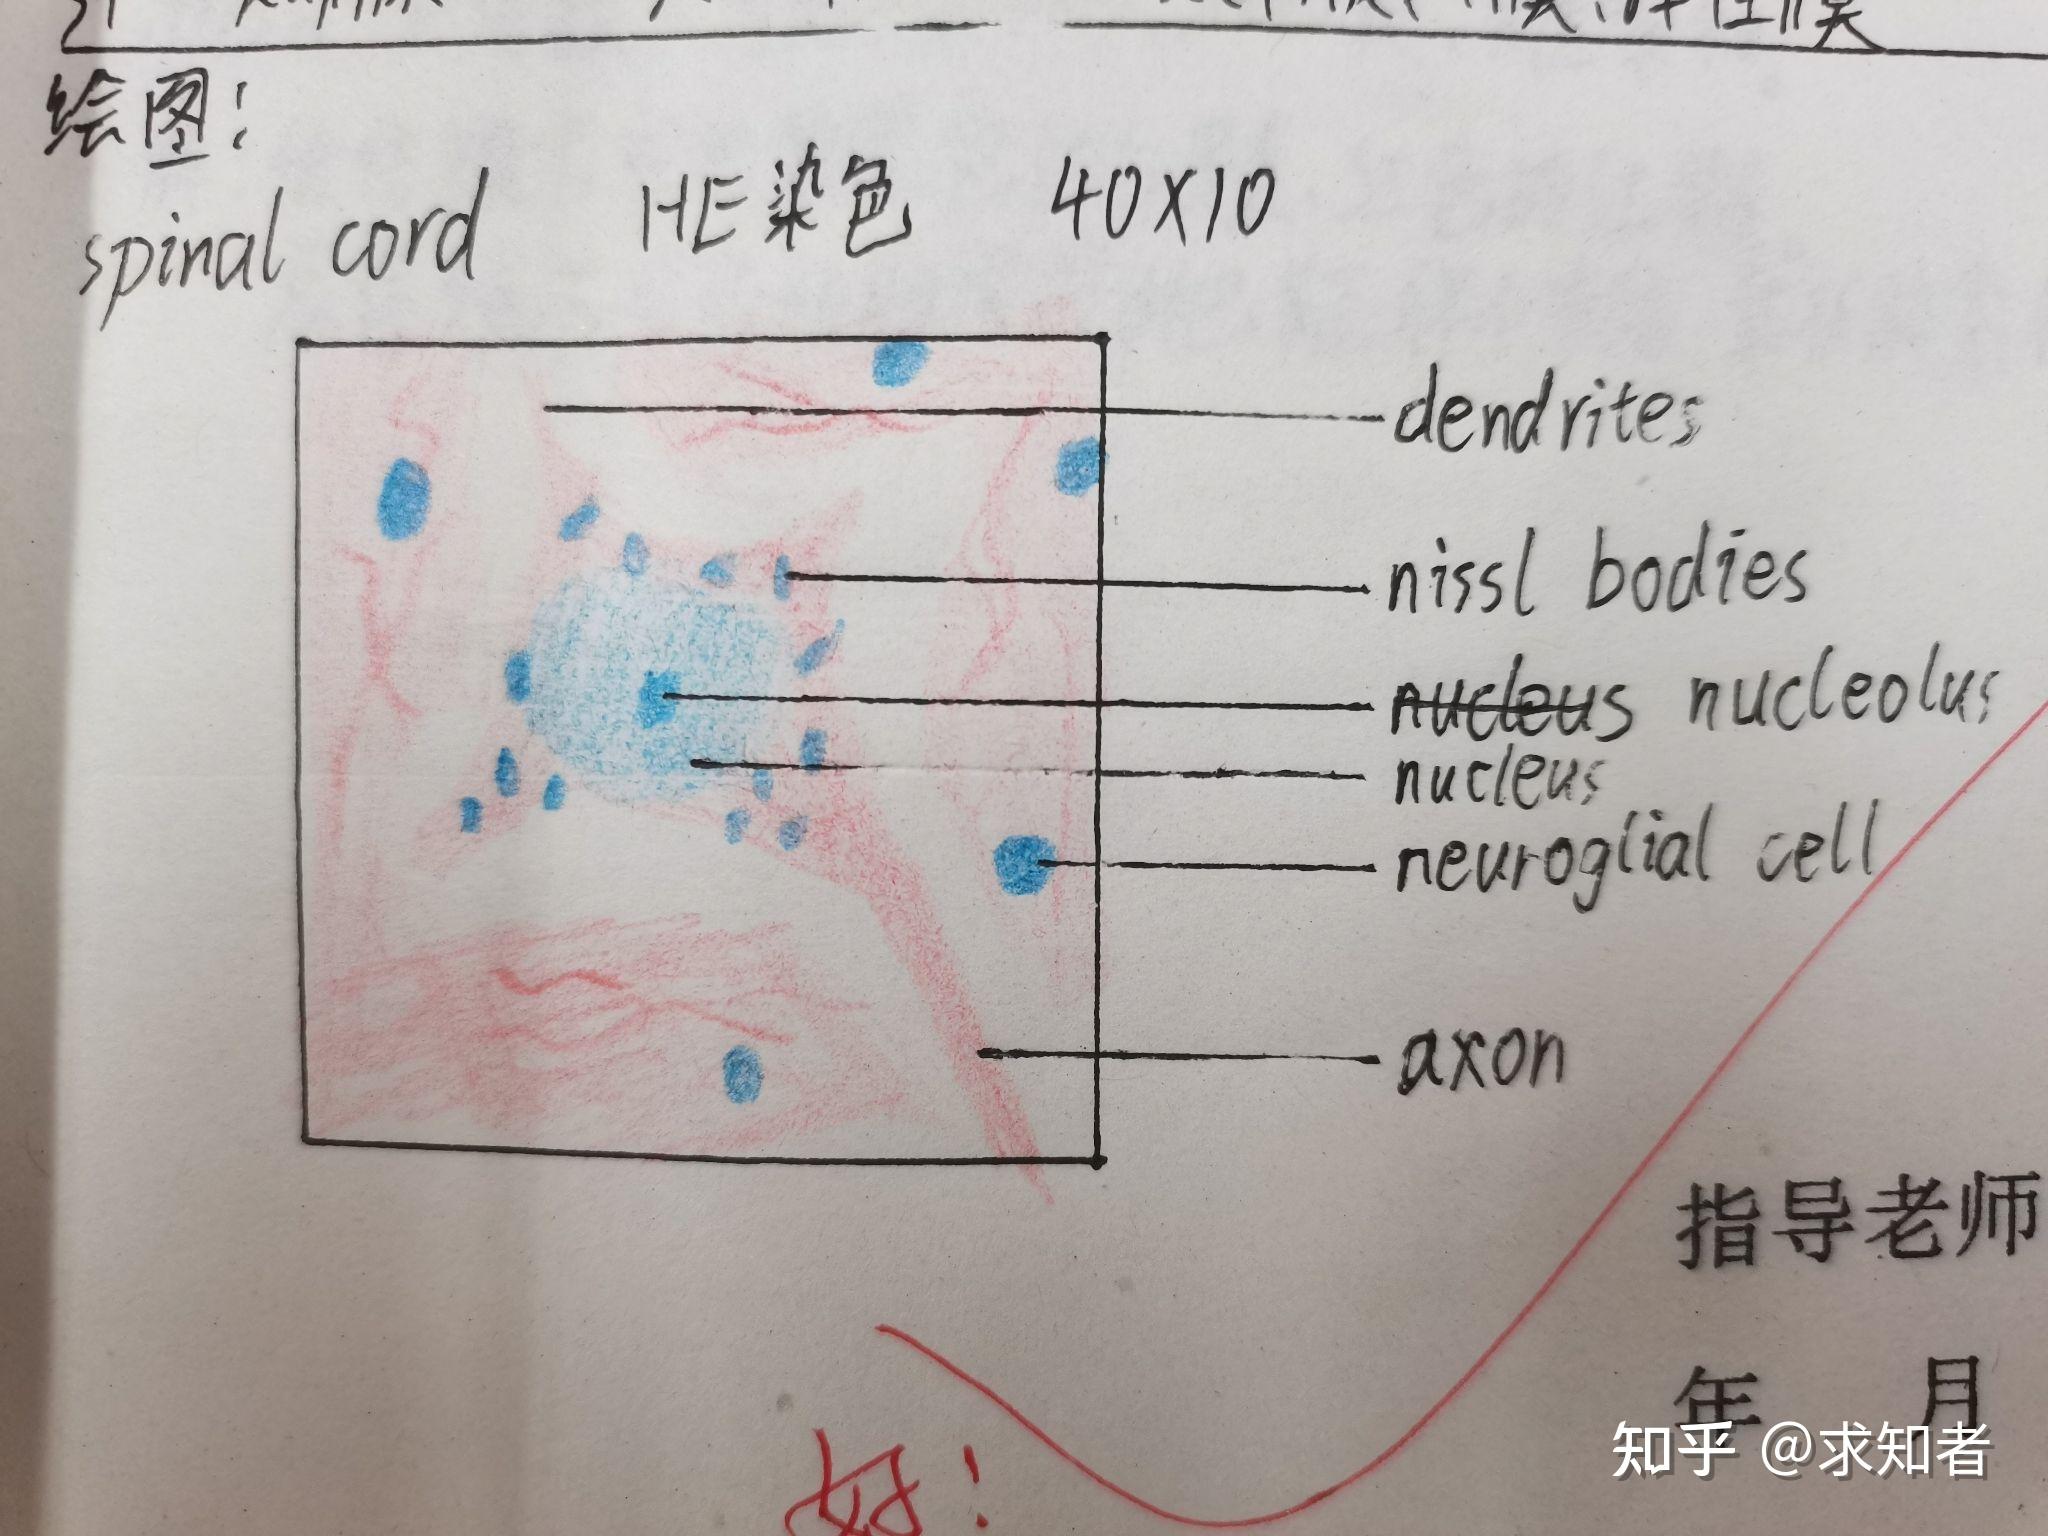 组胚红蓝铅笔绘图(按需自取)